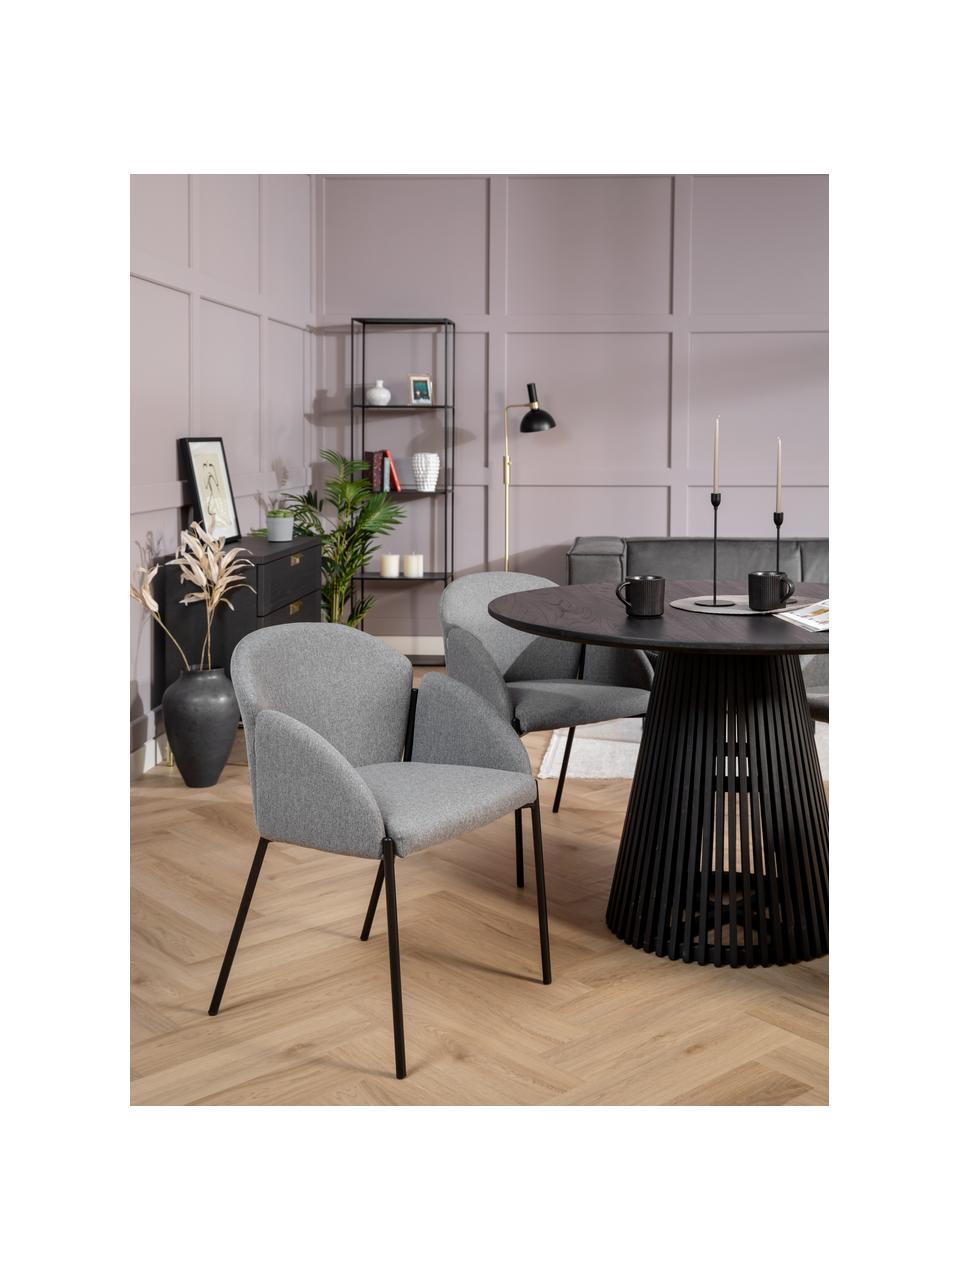 Grijs gestoffeerde stoel Malingu met metalen poten, Bekleding: 95 % polyester, 5 % katoe, Frame: gelakt metaal, Grijs, B 60 x D 60 cm